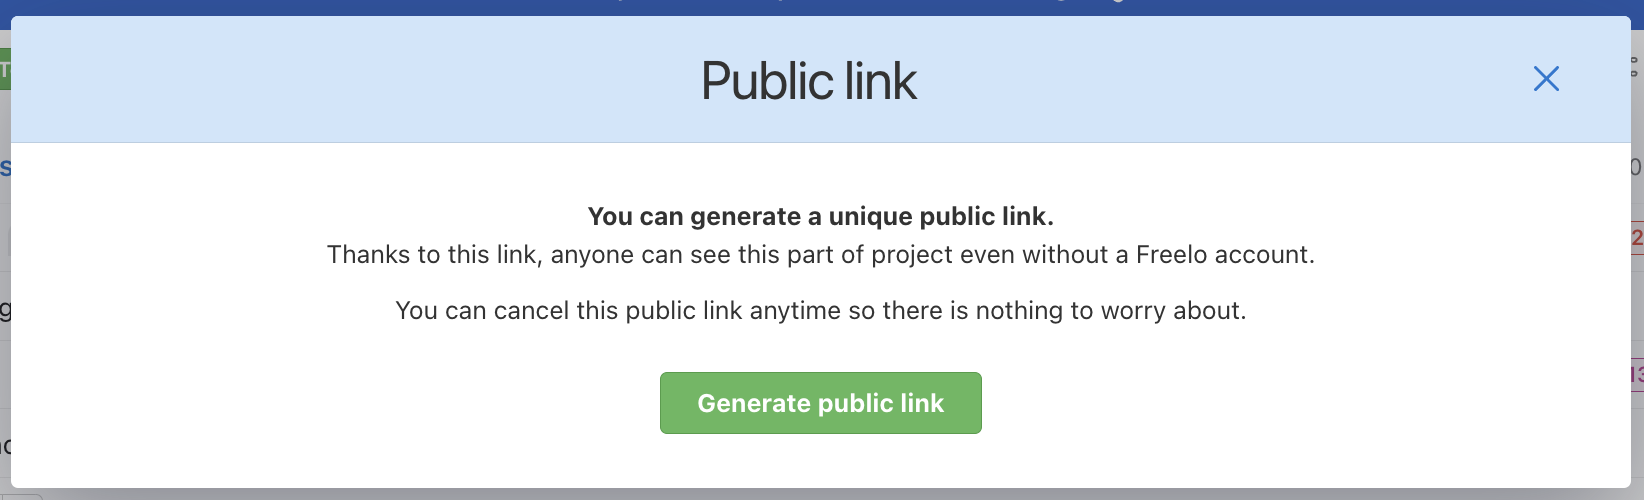 Confirm generating a public link.